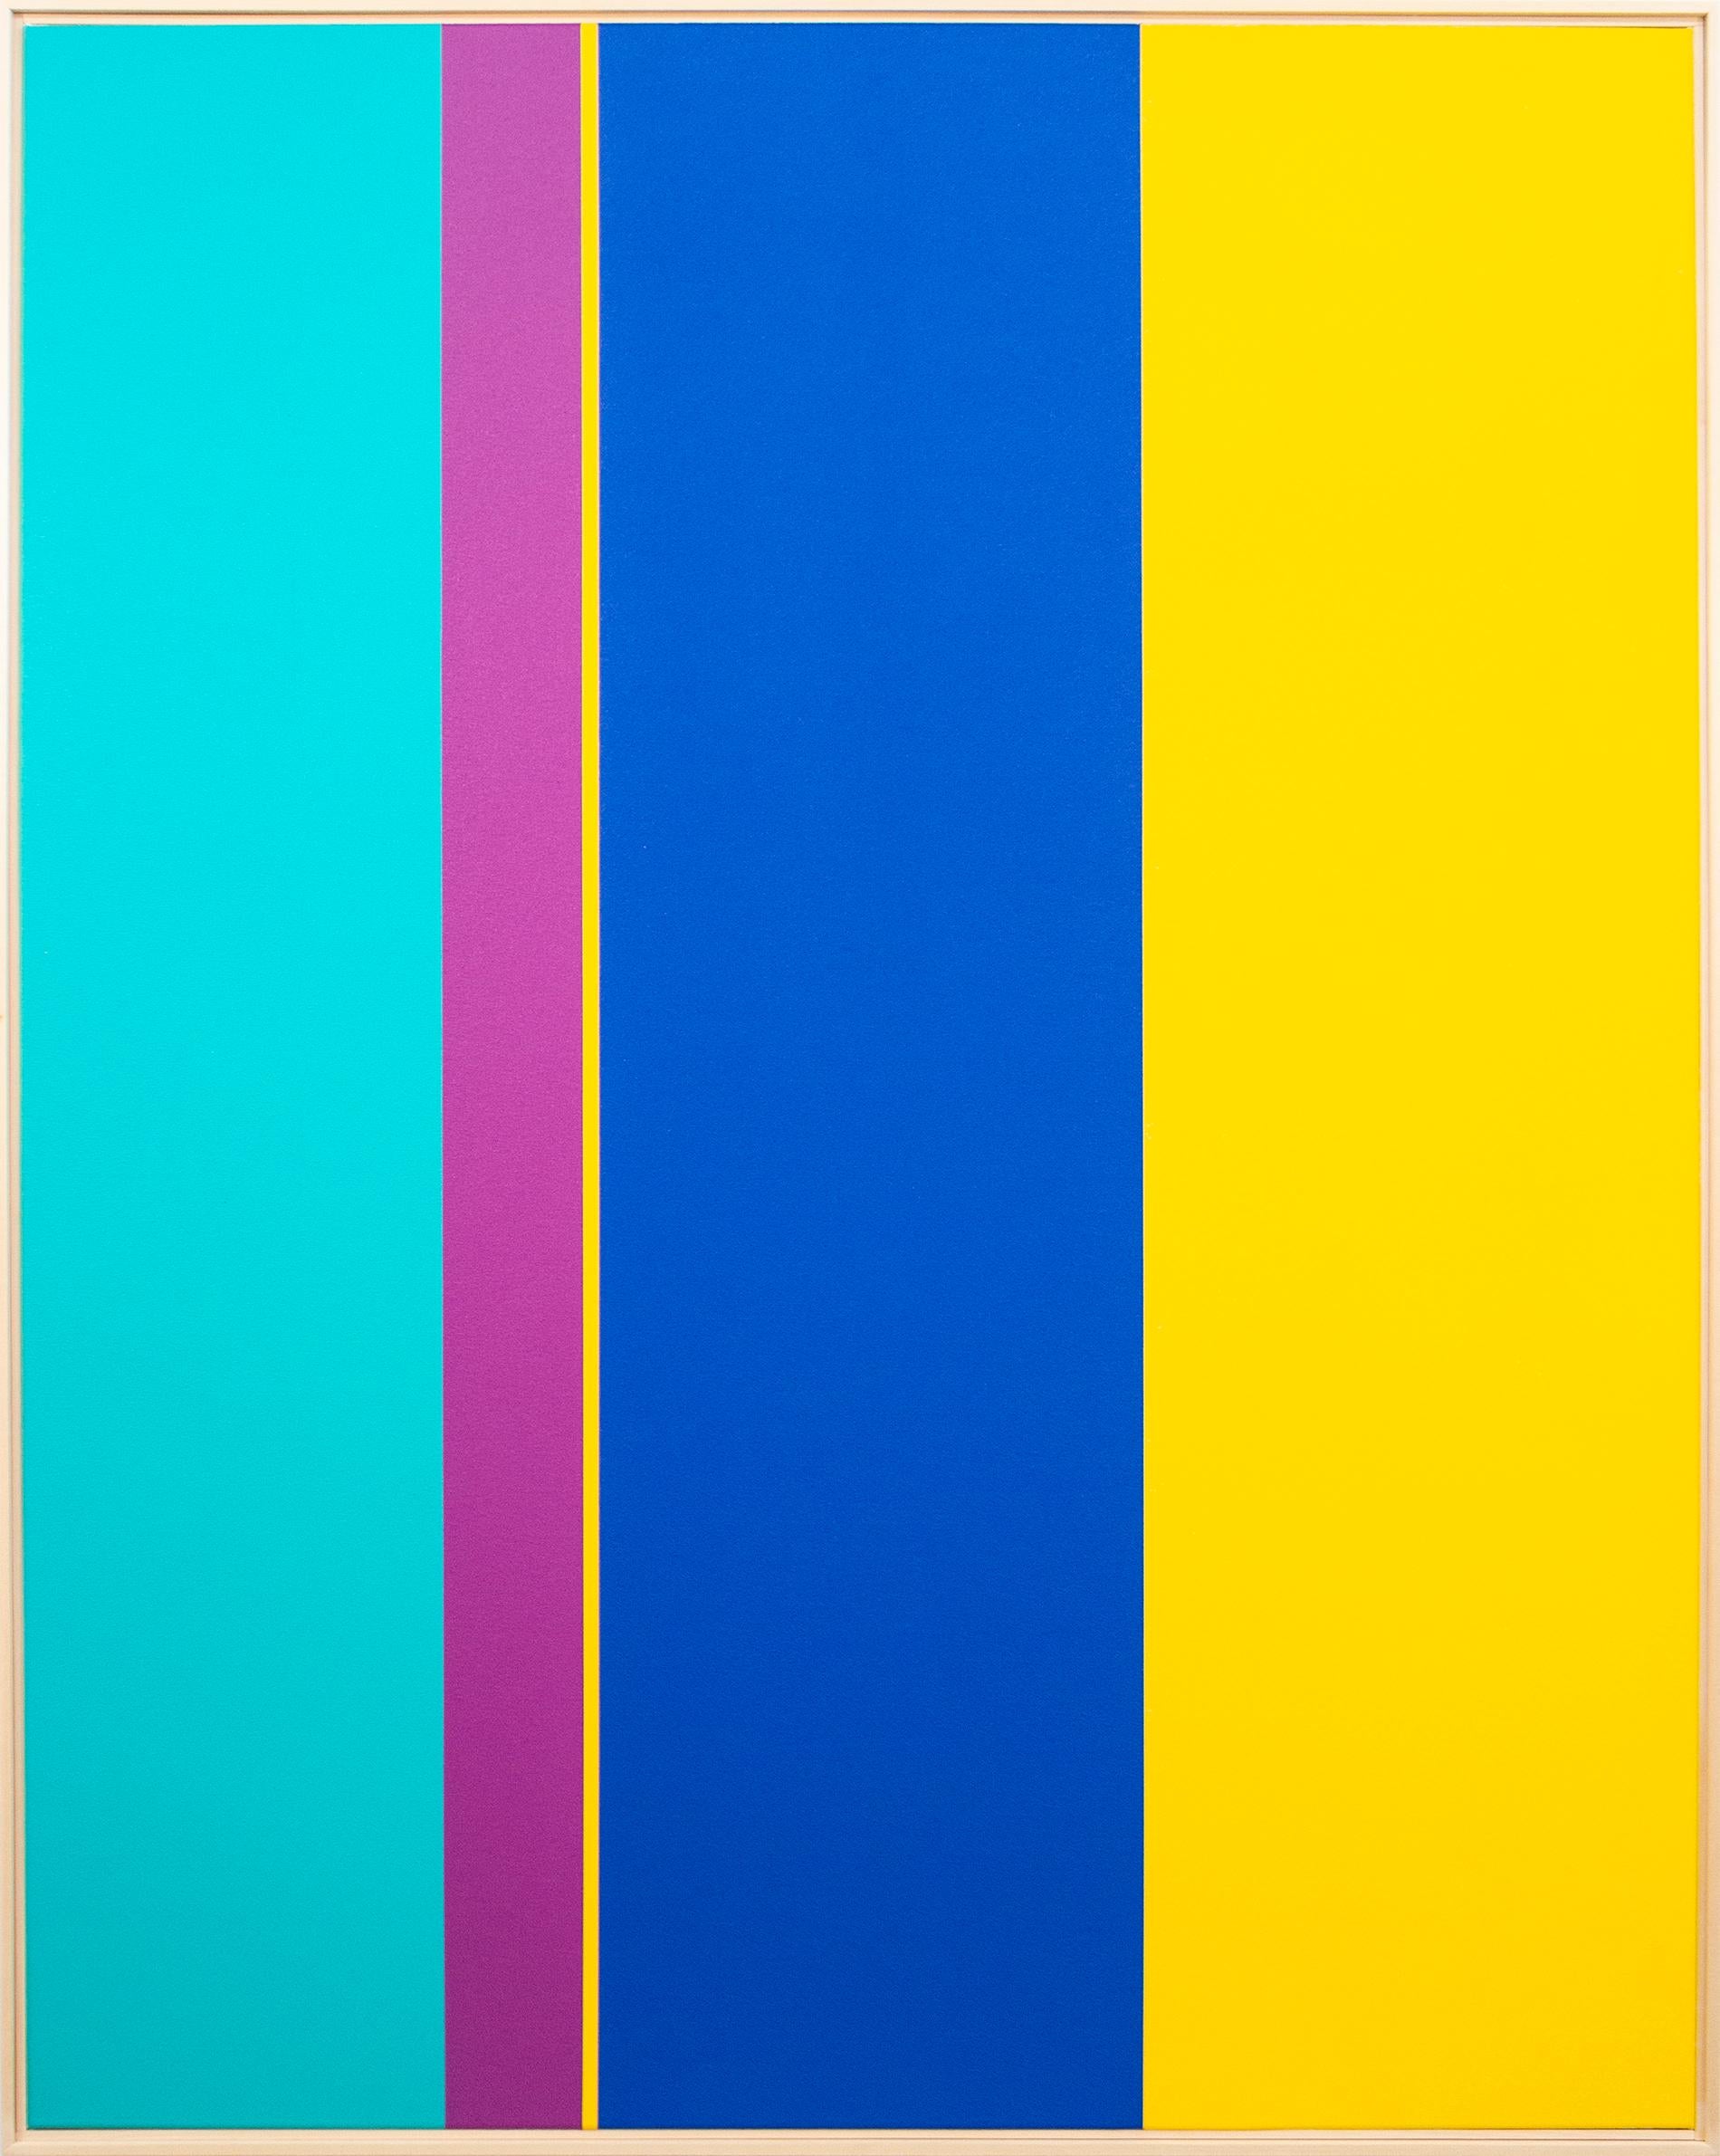 Extension - großes, leuchtendes, farbenfrohes, geometrisches abstraktes Acryl auf Leinwand